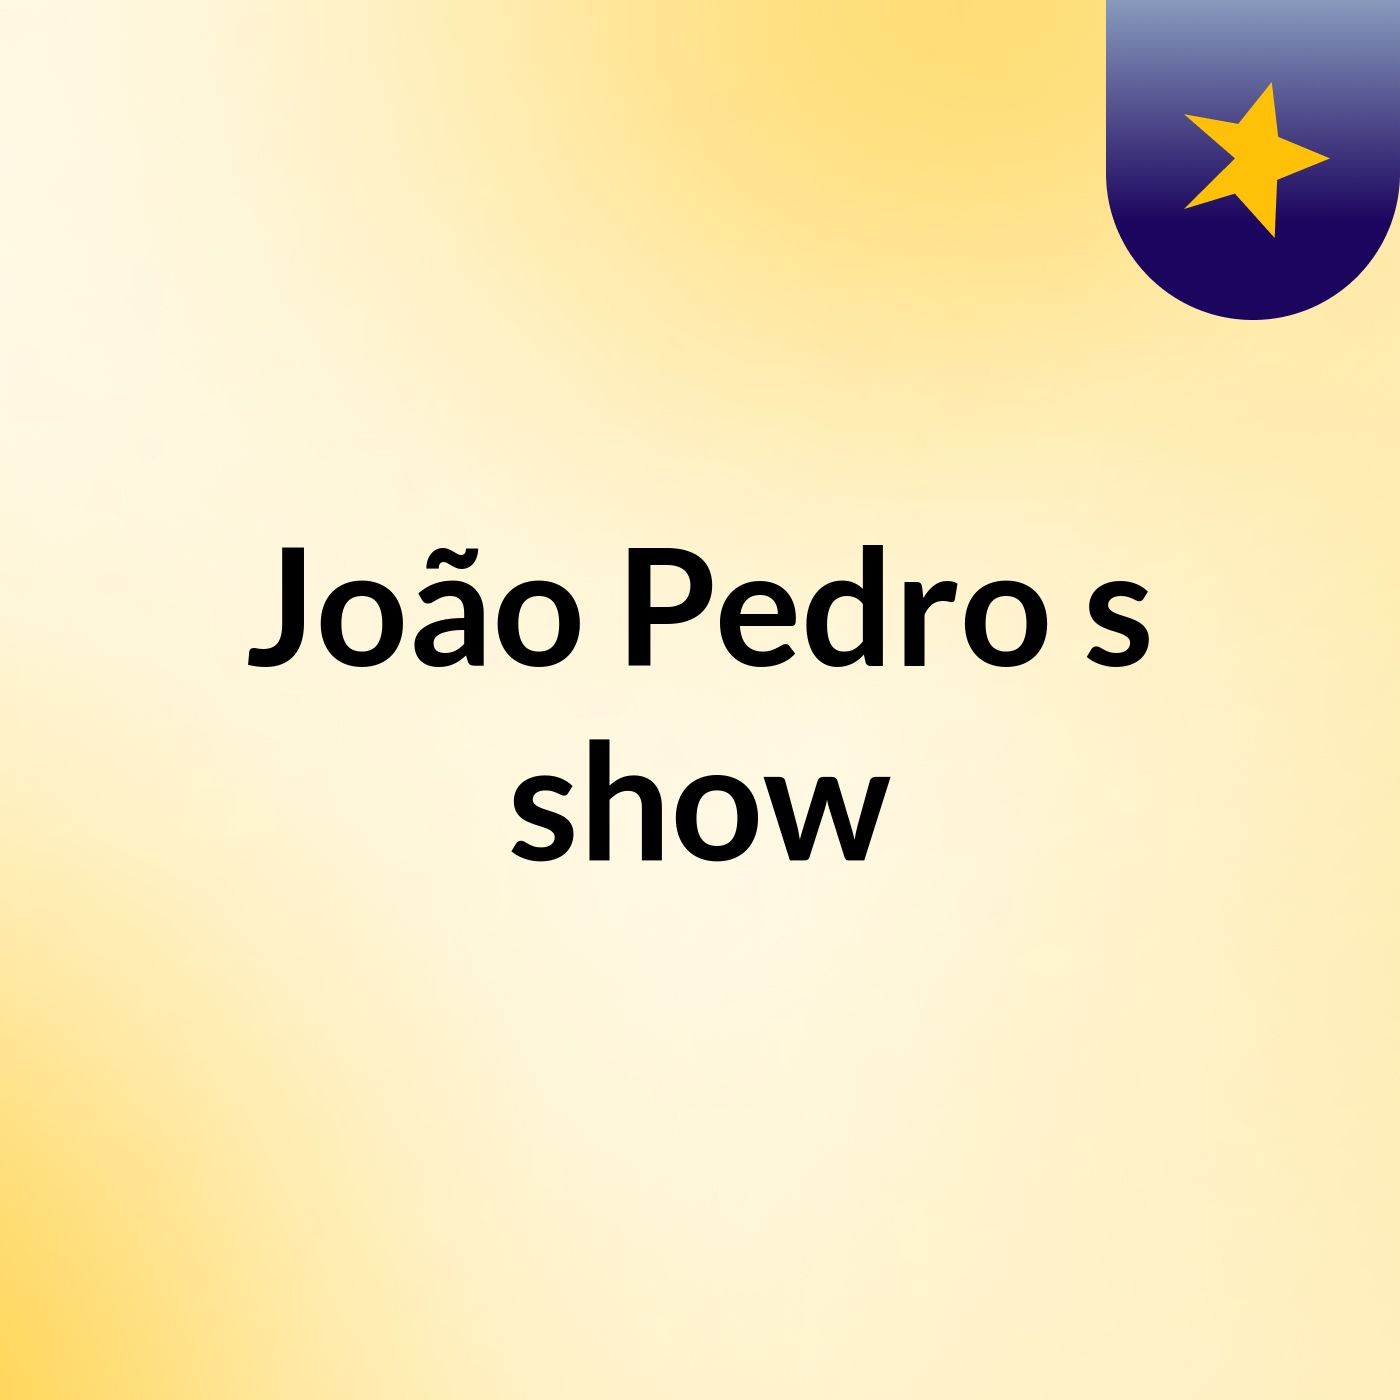 João Pedro's show